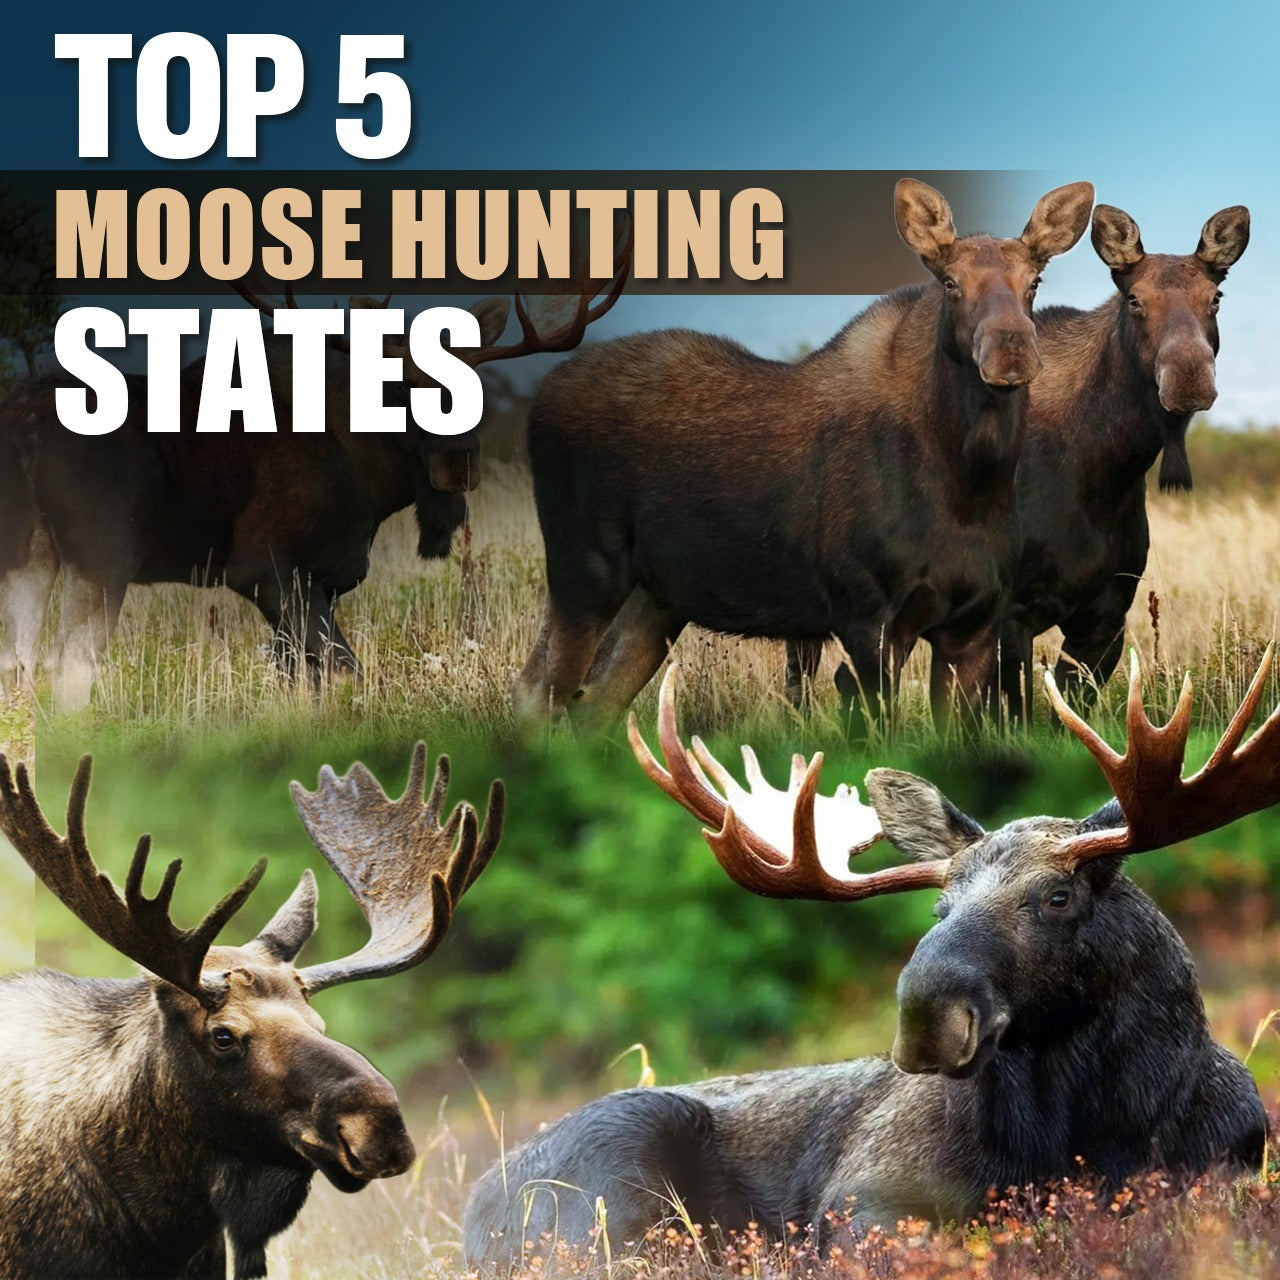 Top 5 Moose Hunting States